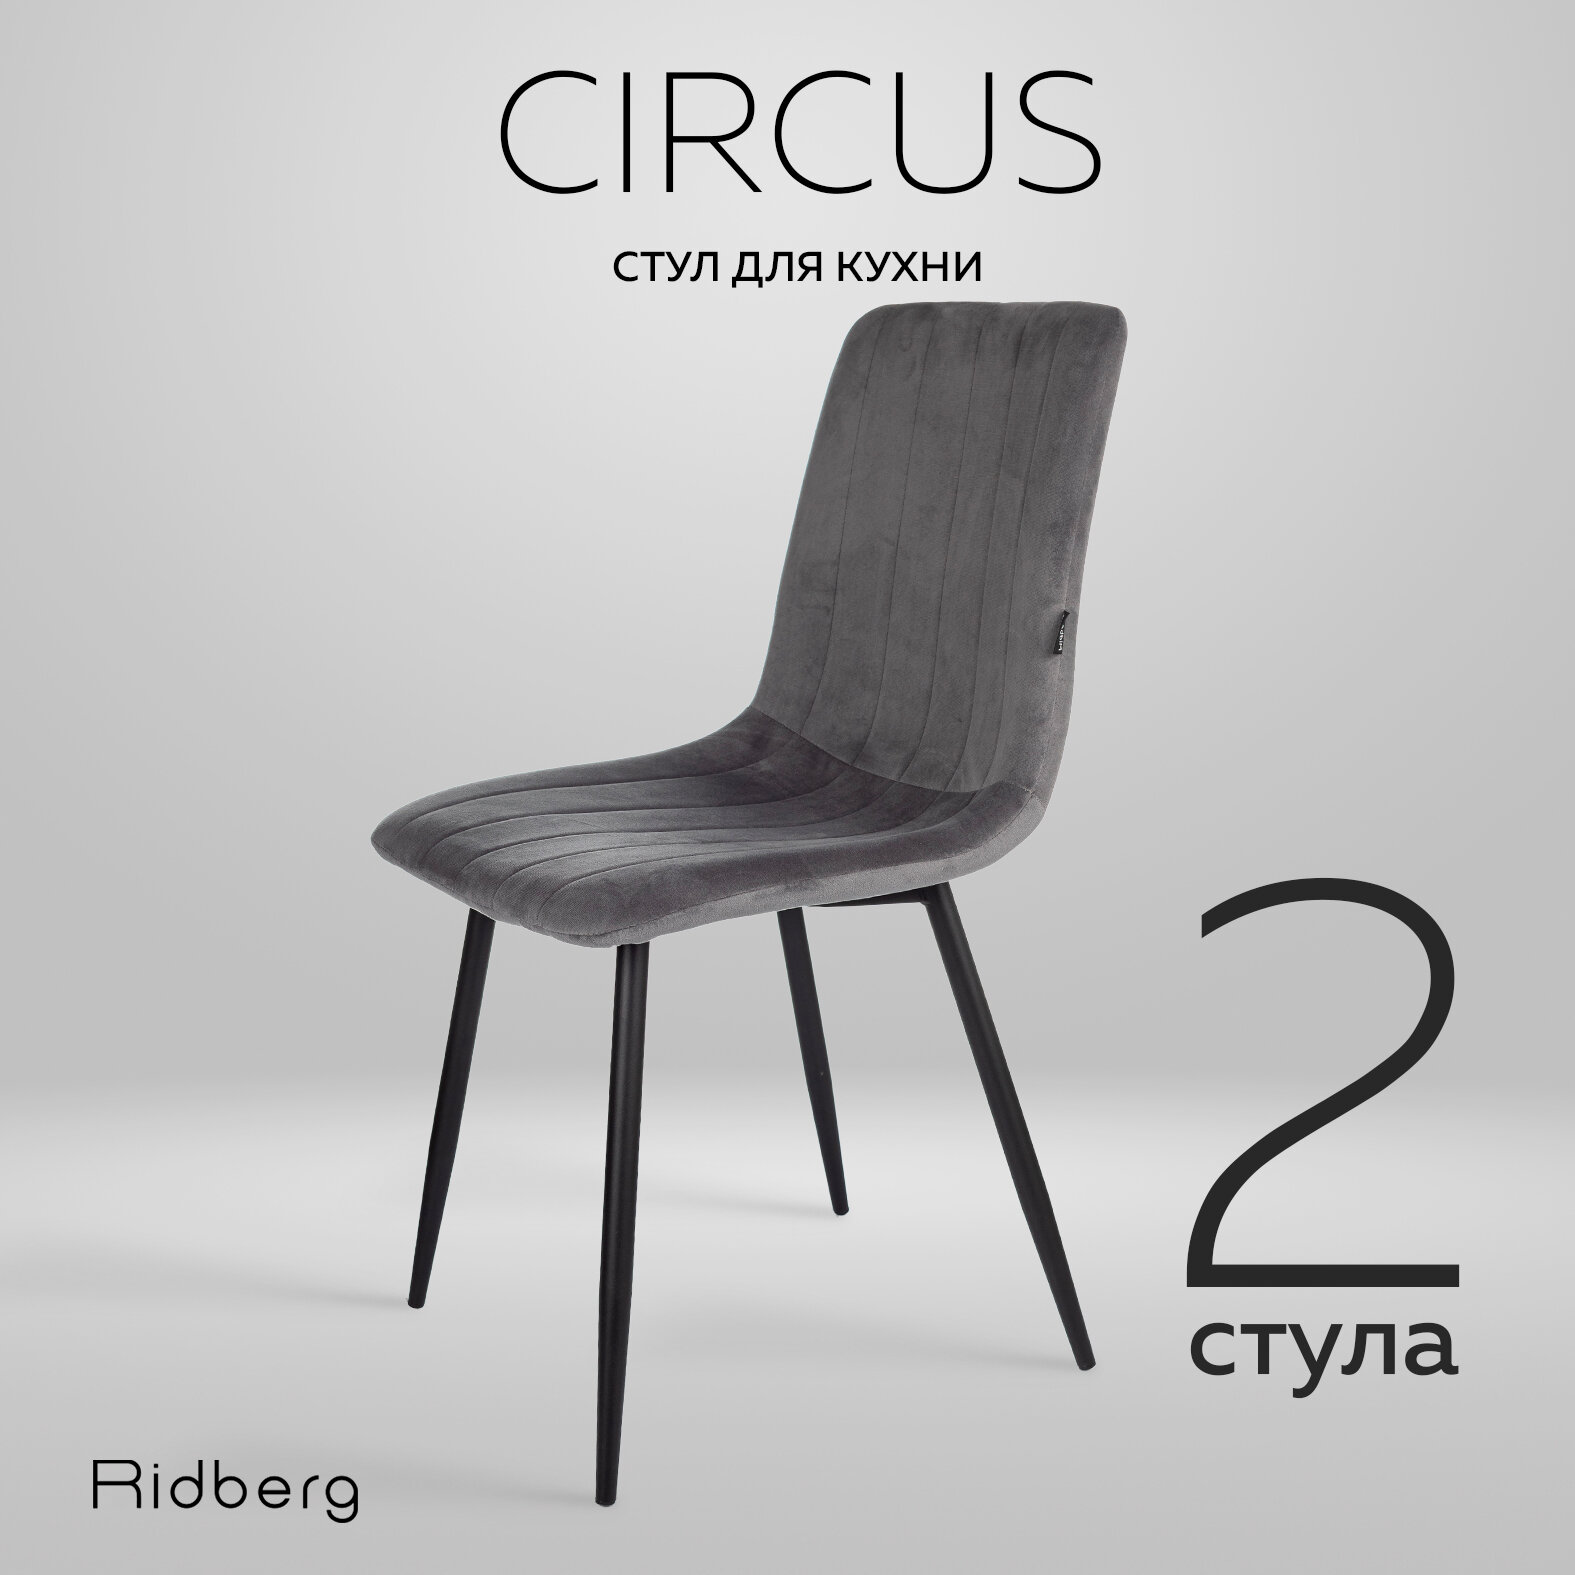 Комплект стульев 2шт. для кухни Ridberg CIRCUS, велюр, темно-серый. Стул для обеденной зоны, для гостиной, для спальни и детской комнаты